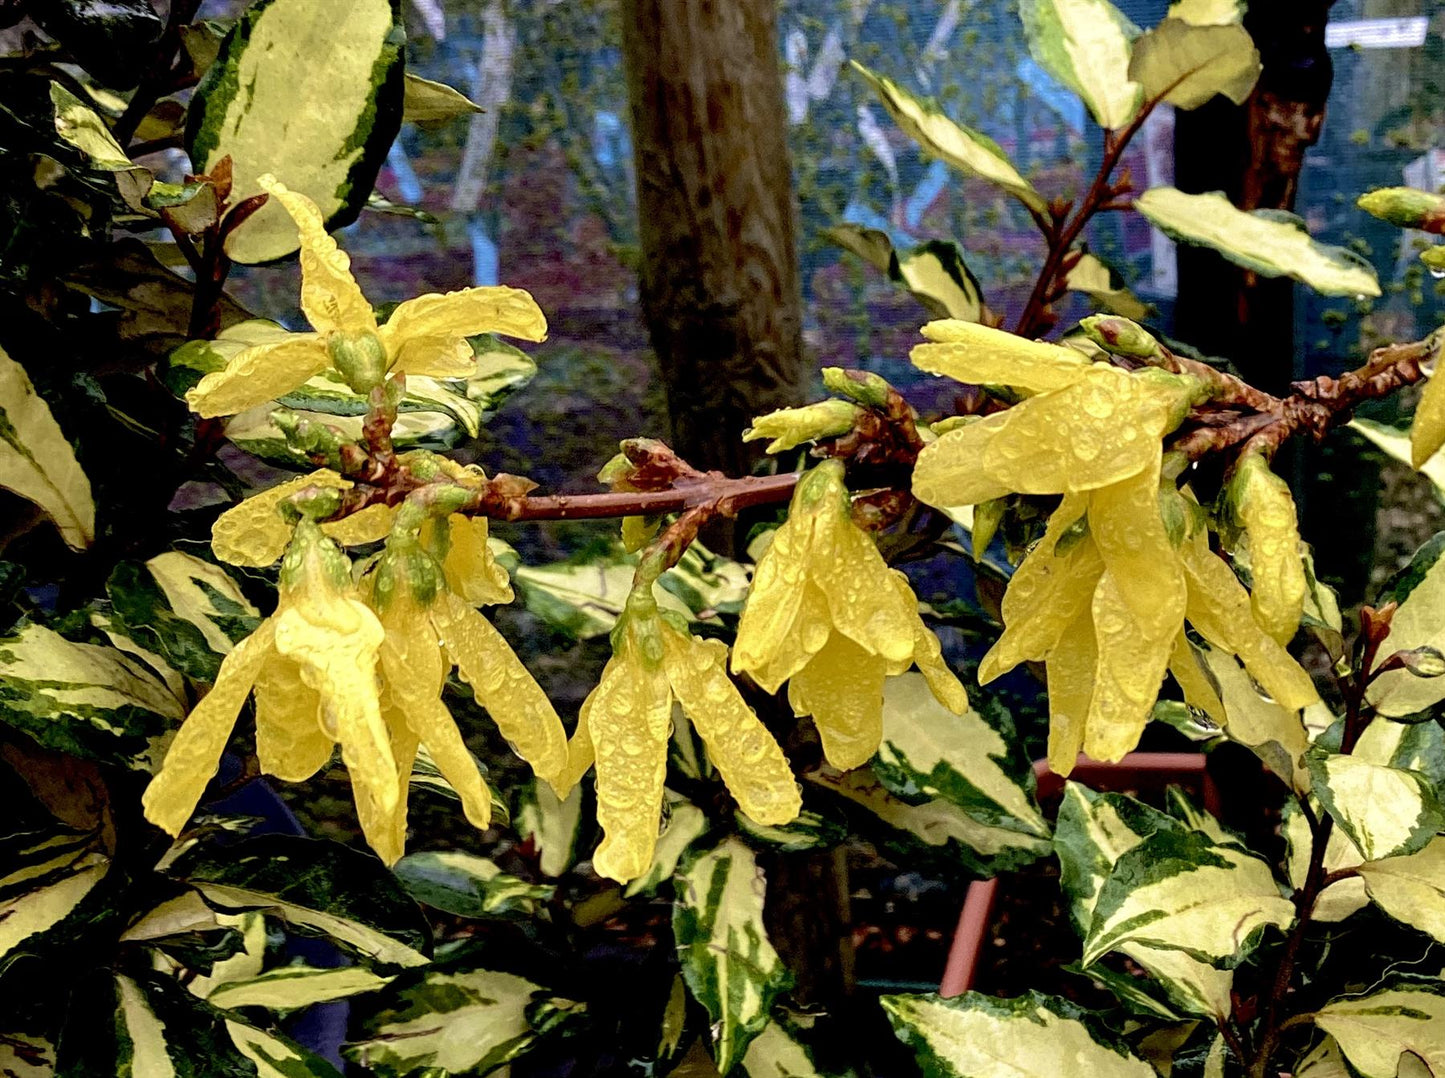 Forsythia x intermedia 'Lynwood Variety' - 100/120cm, 20lt